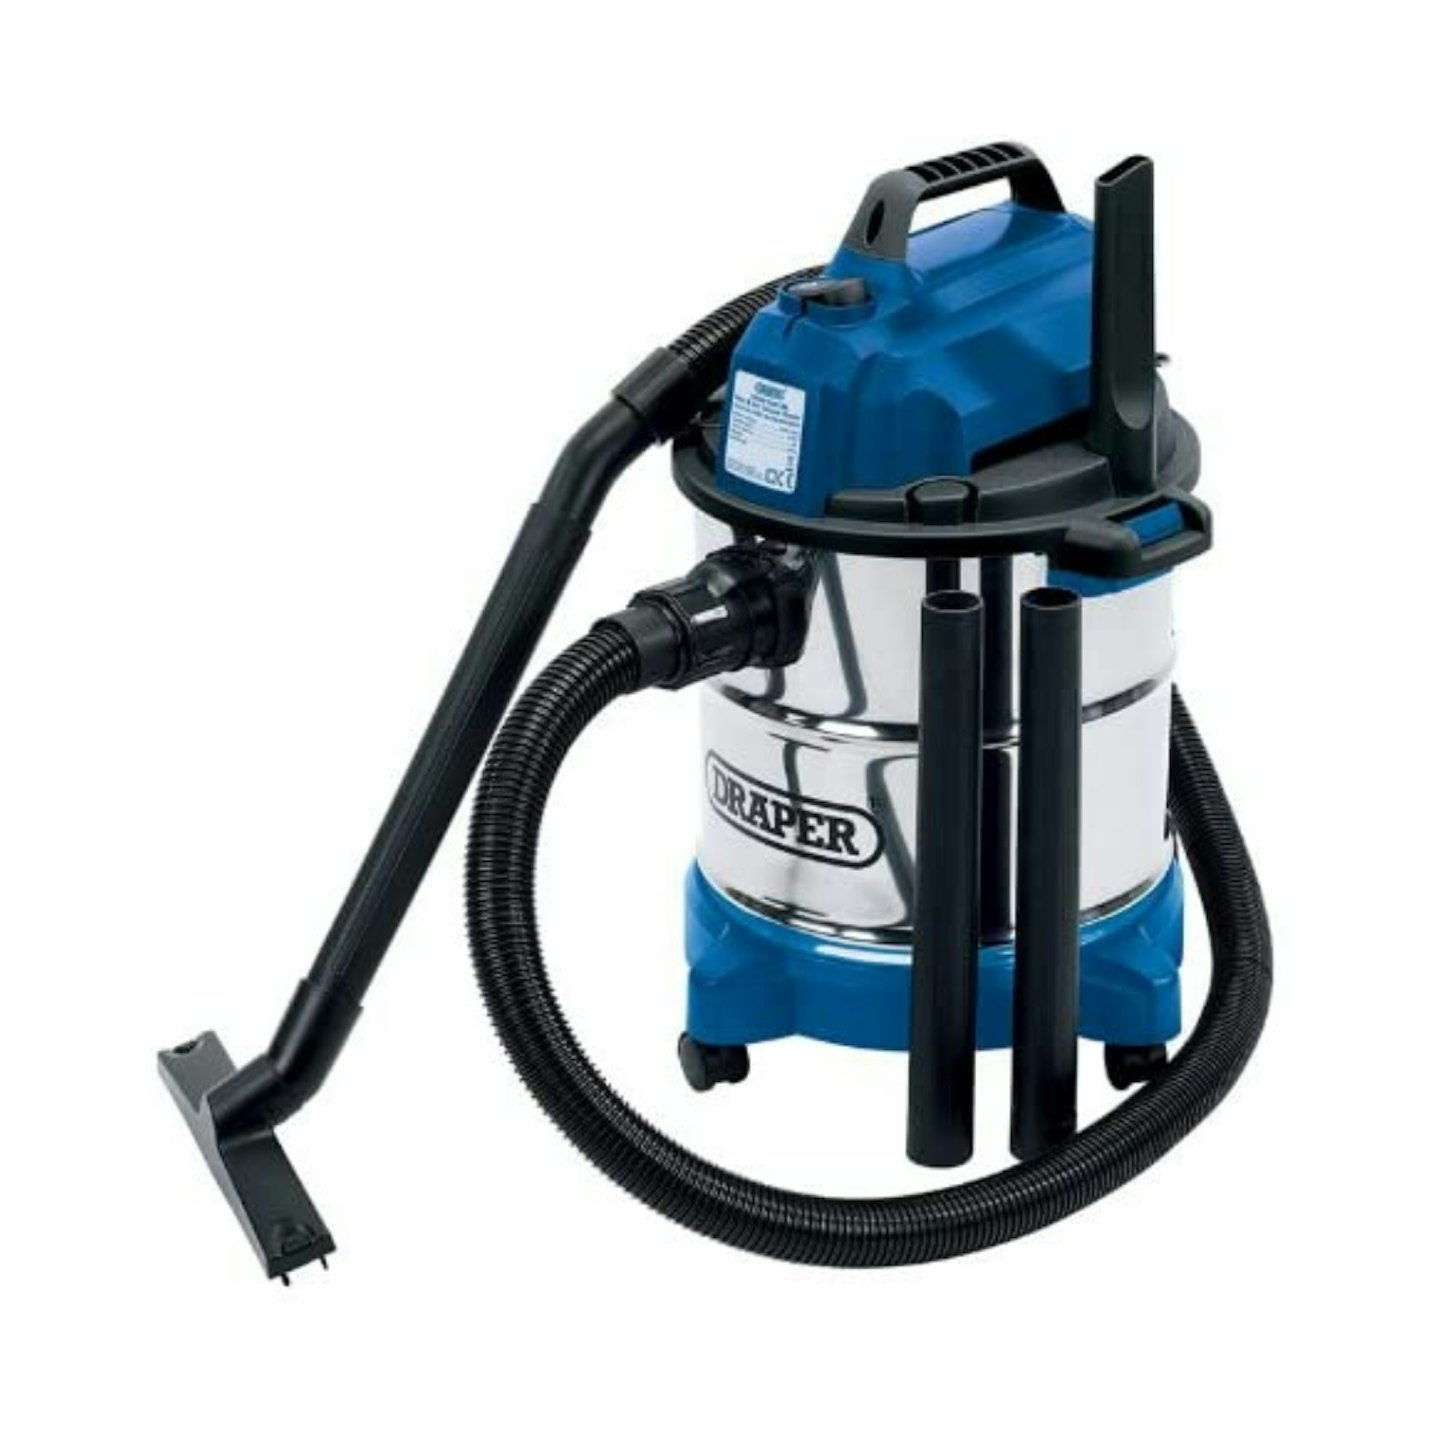 Draper 13785 Wet & Dry Vacuum Cleaner